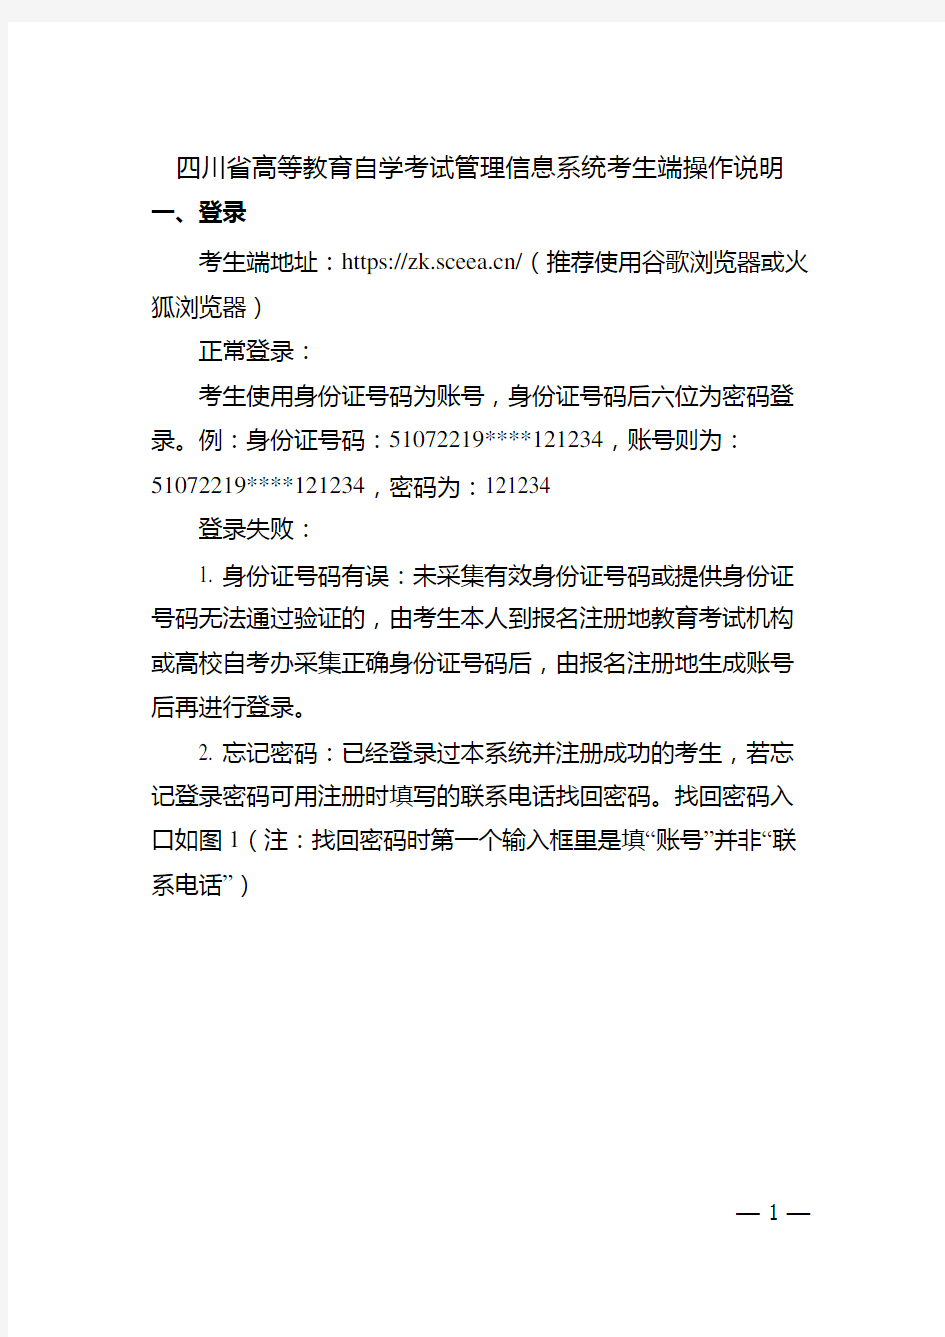 四川省高等教育自学考试管理信息系统考生端操作说明